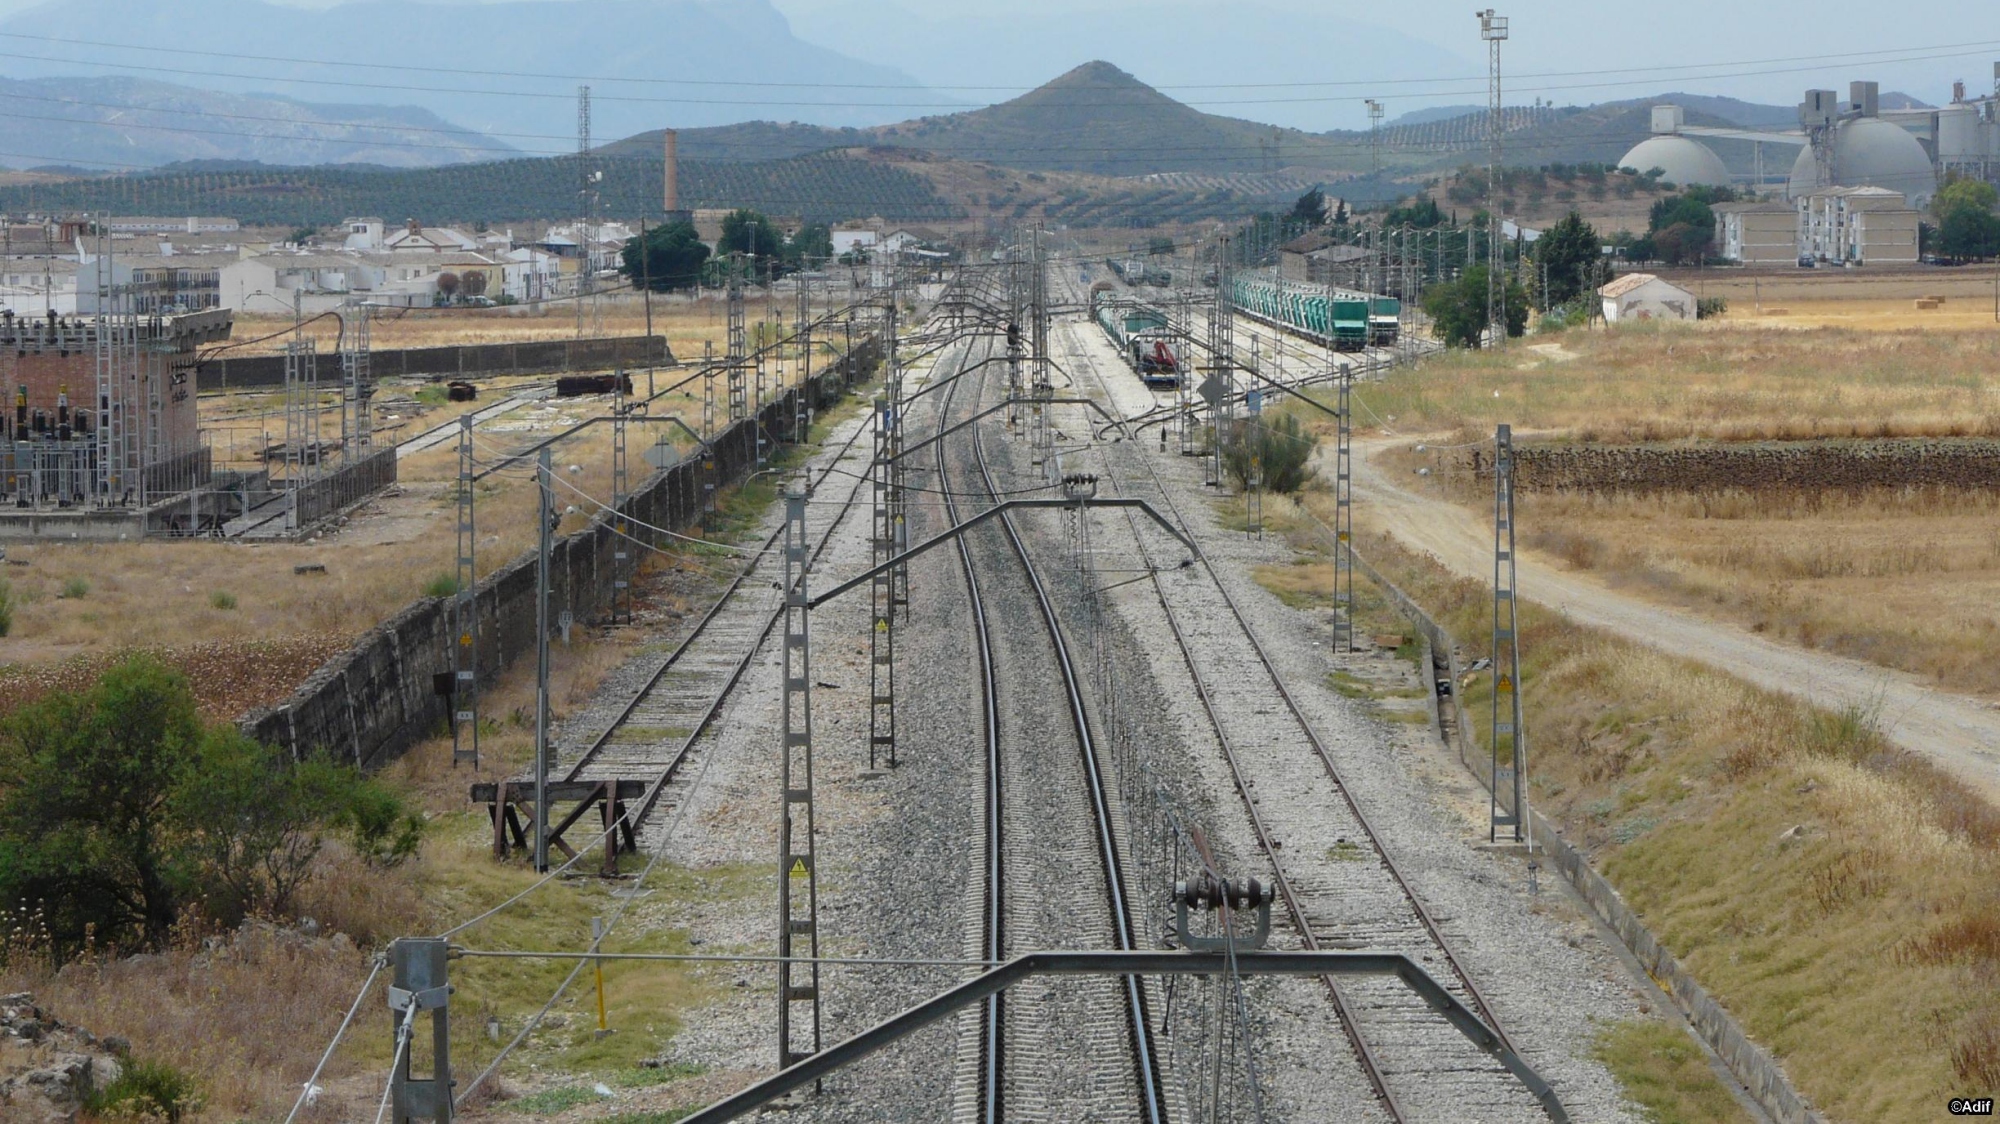 Línea ferroviaria entre Antequera y Algeciras, llegando a Bobadilla Estación